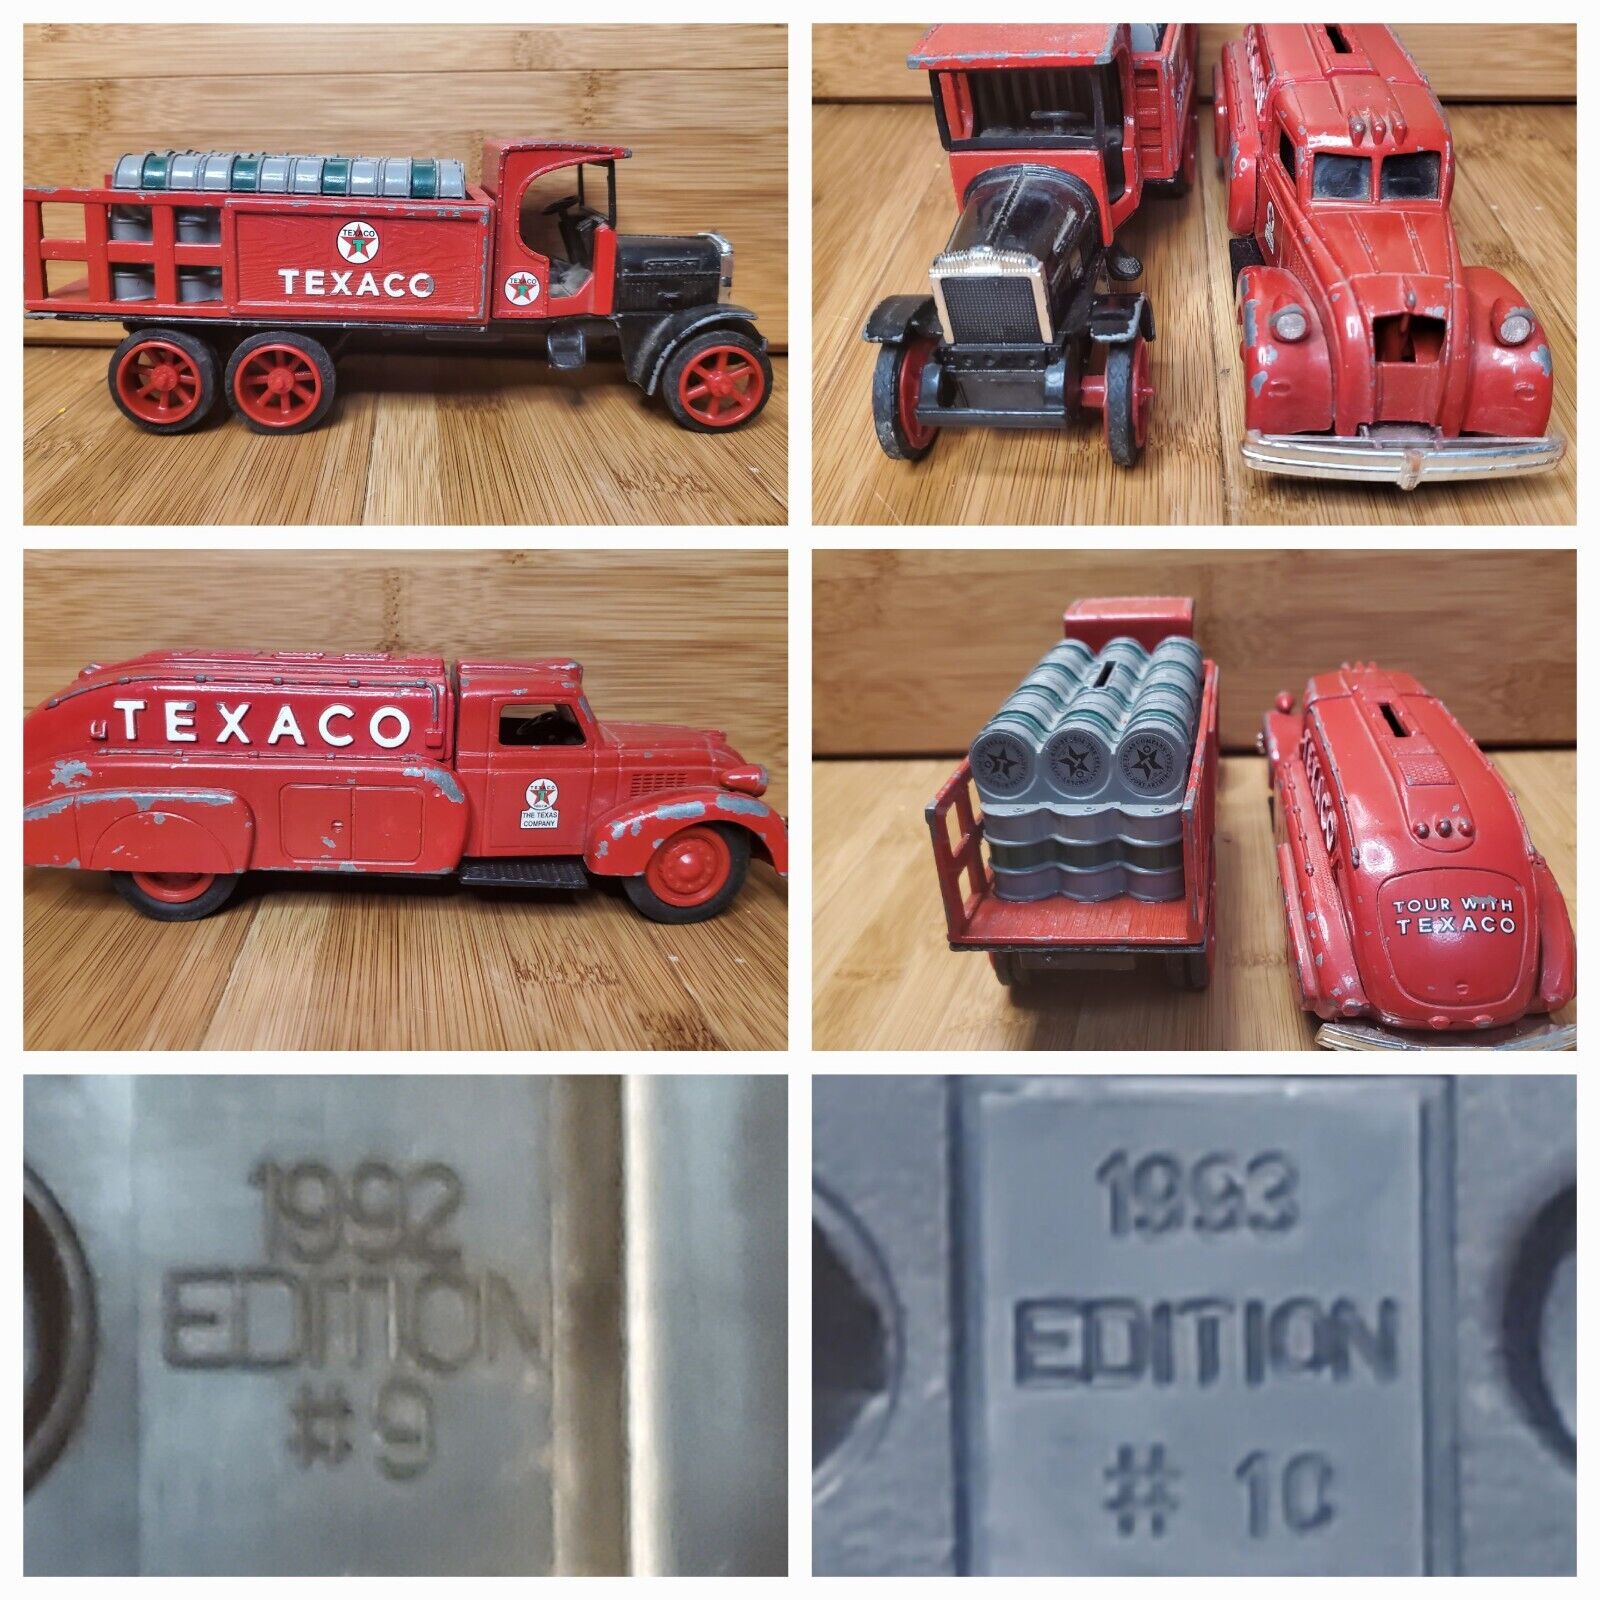 1992 &1993 ERTL Texaco Die Cast - 1939 Dodge Airflow & Kenworth Truck Coin Bank 